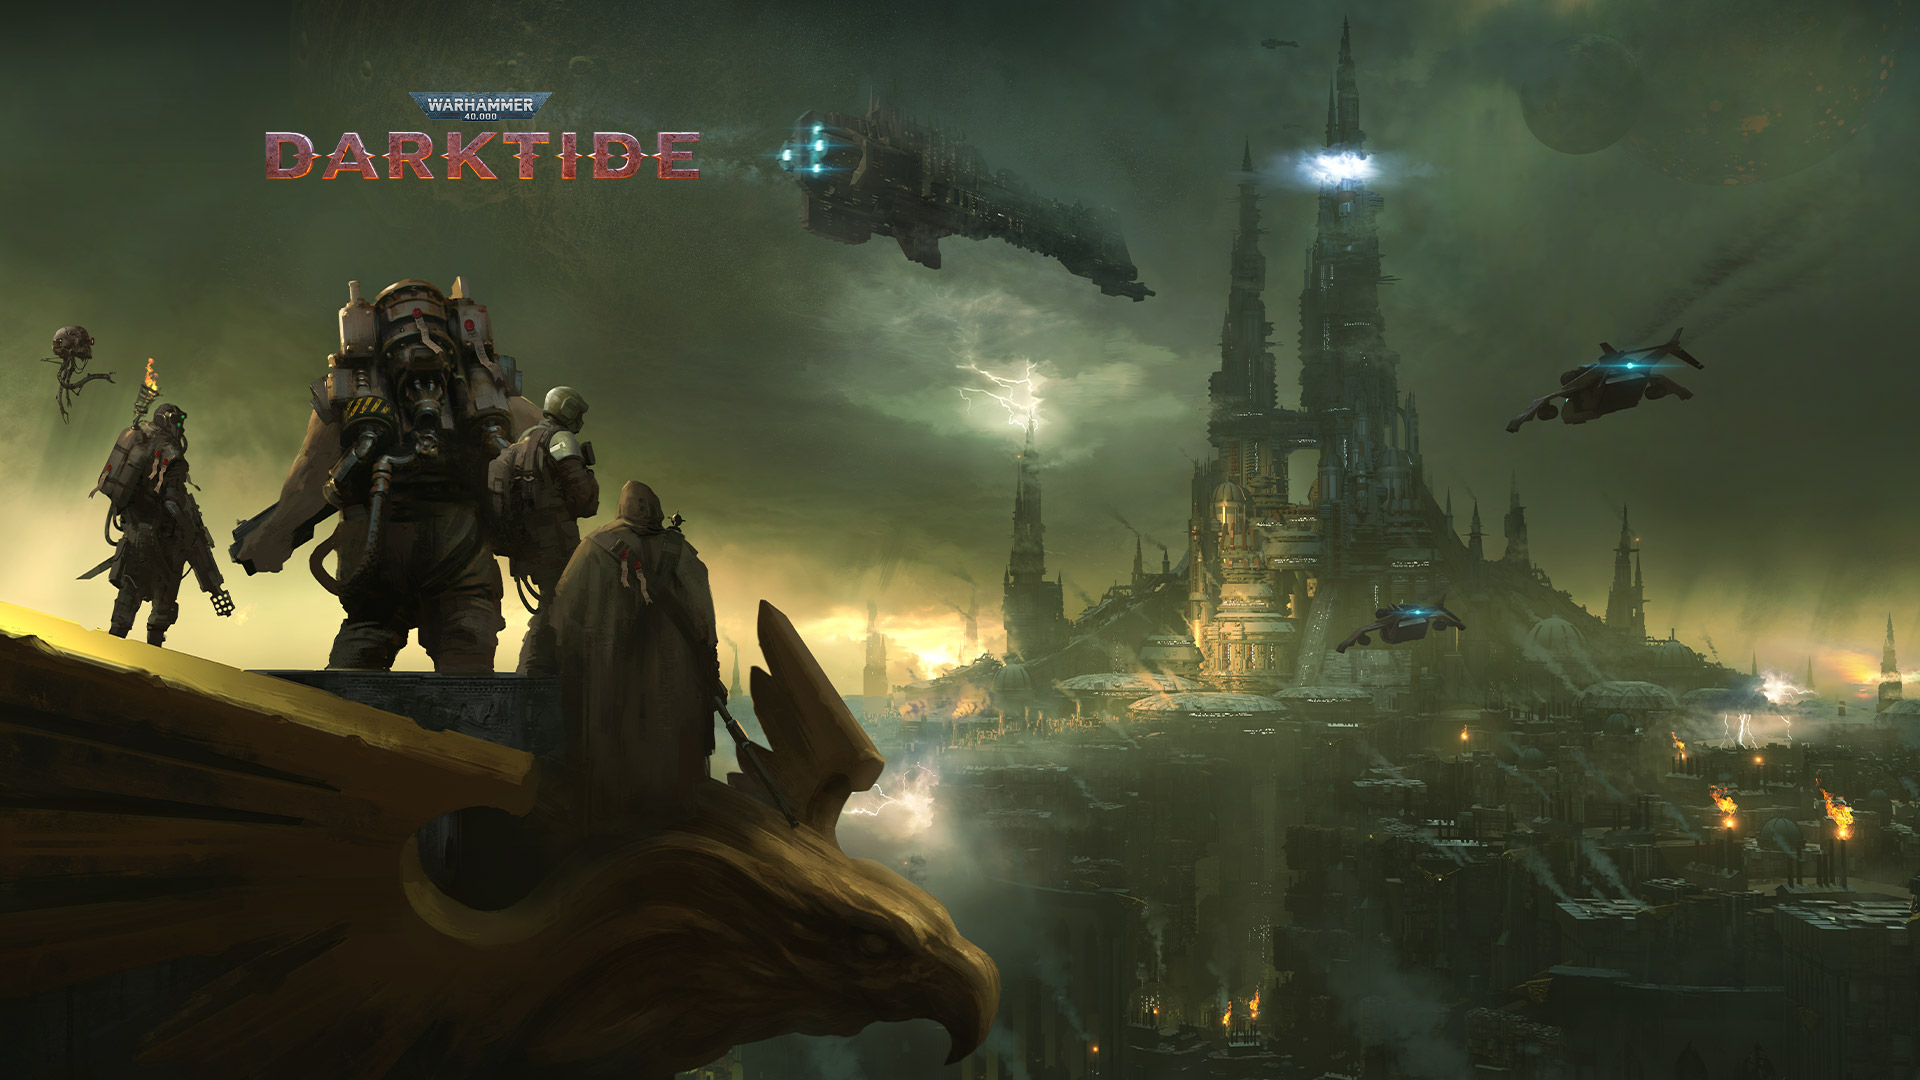 warhammer darktide xbox release date download free